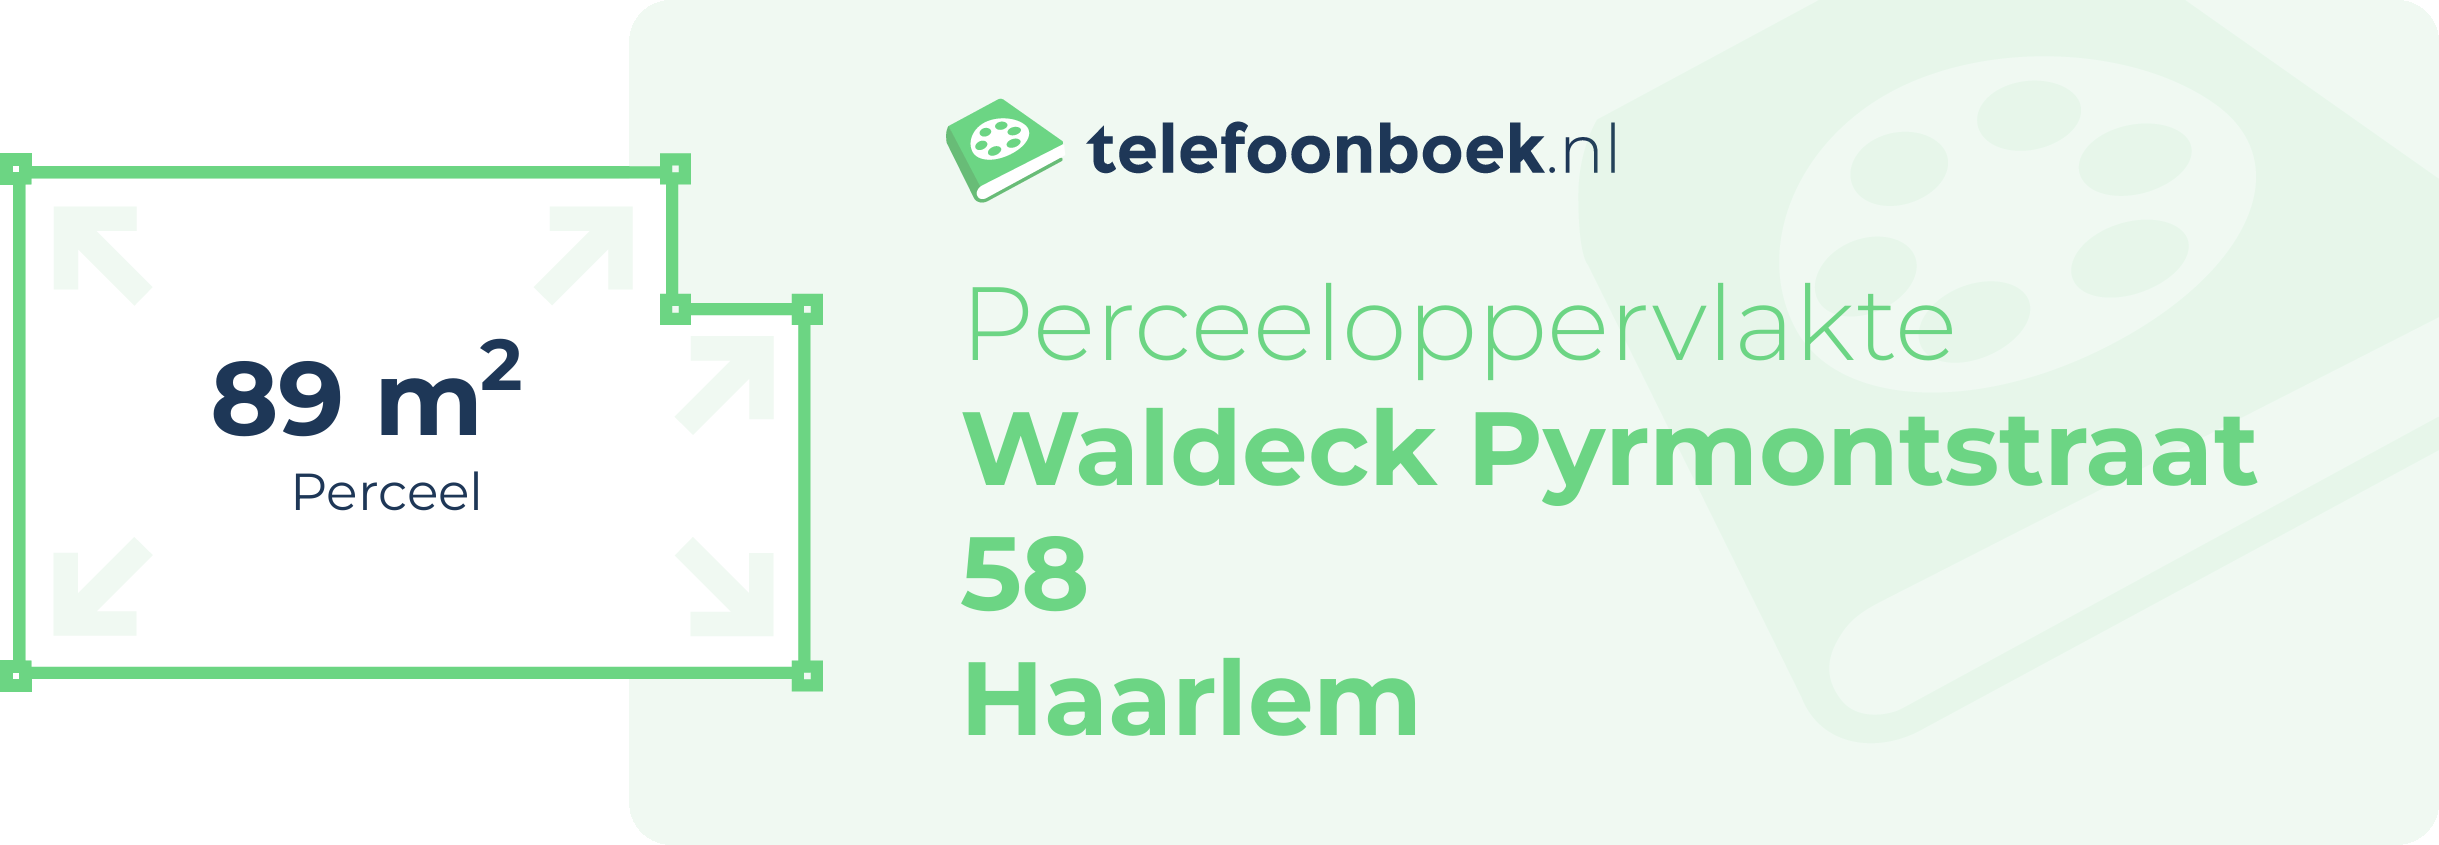 Perceeloppervlakte Waldeck Pyrmontstraat 58 Haarlem